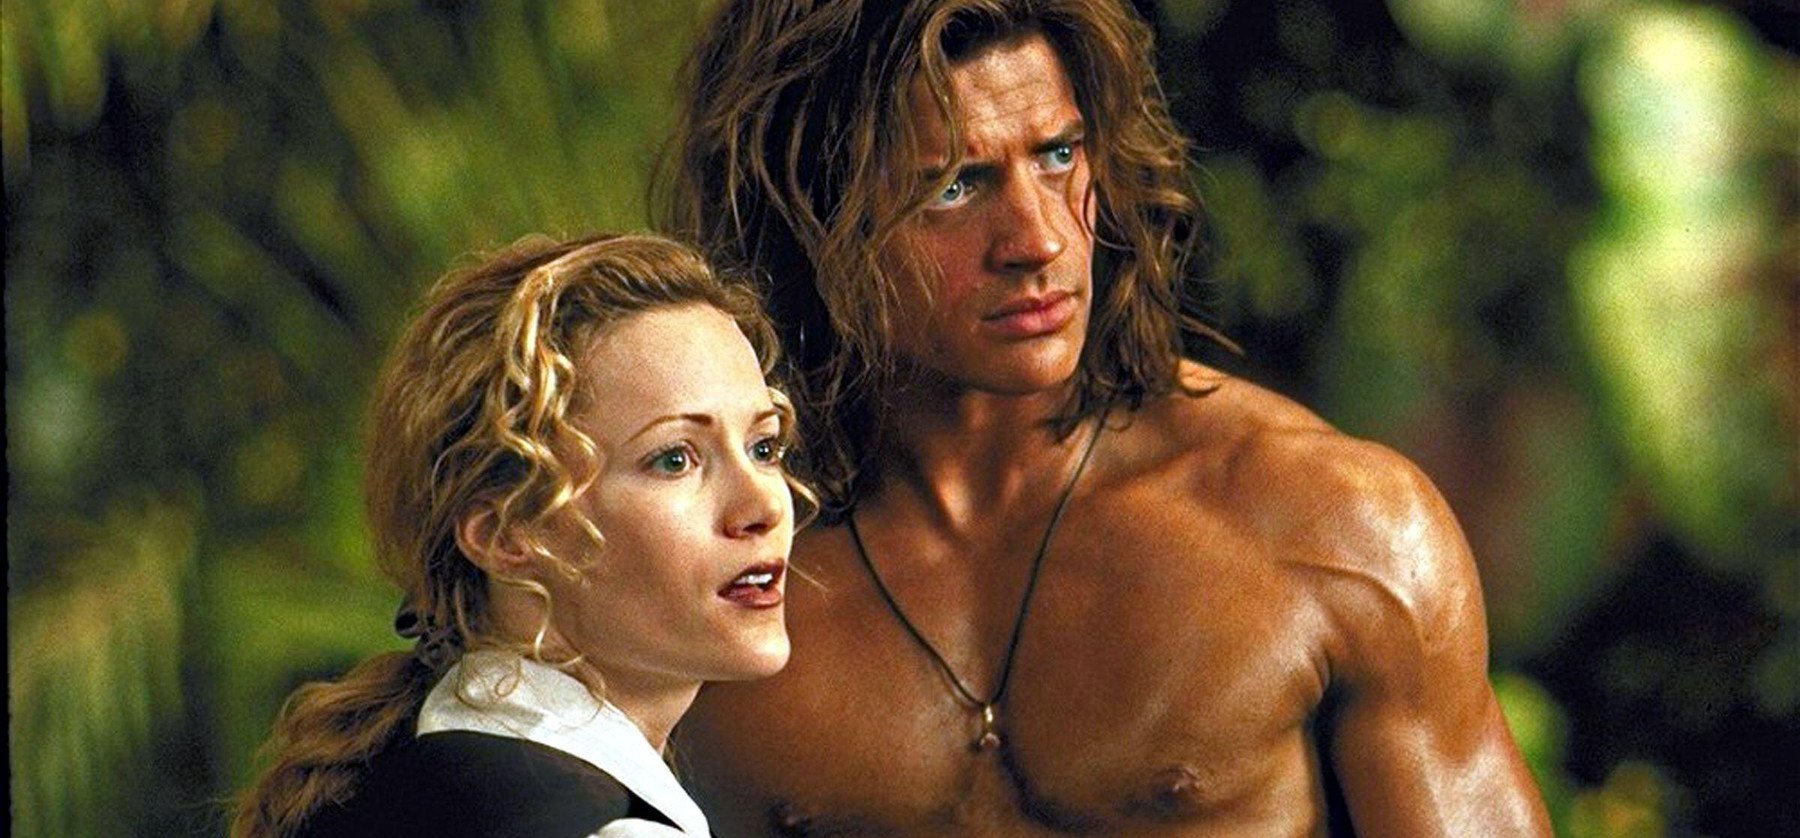 Brendan Fraser 22 év után tudta meg, hogy szerelmes volt belé a színésztársa – Így reagált a Múmia sztárja!